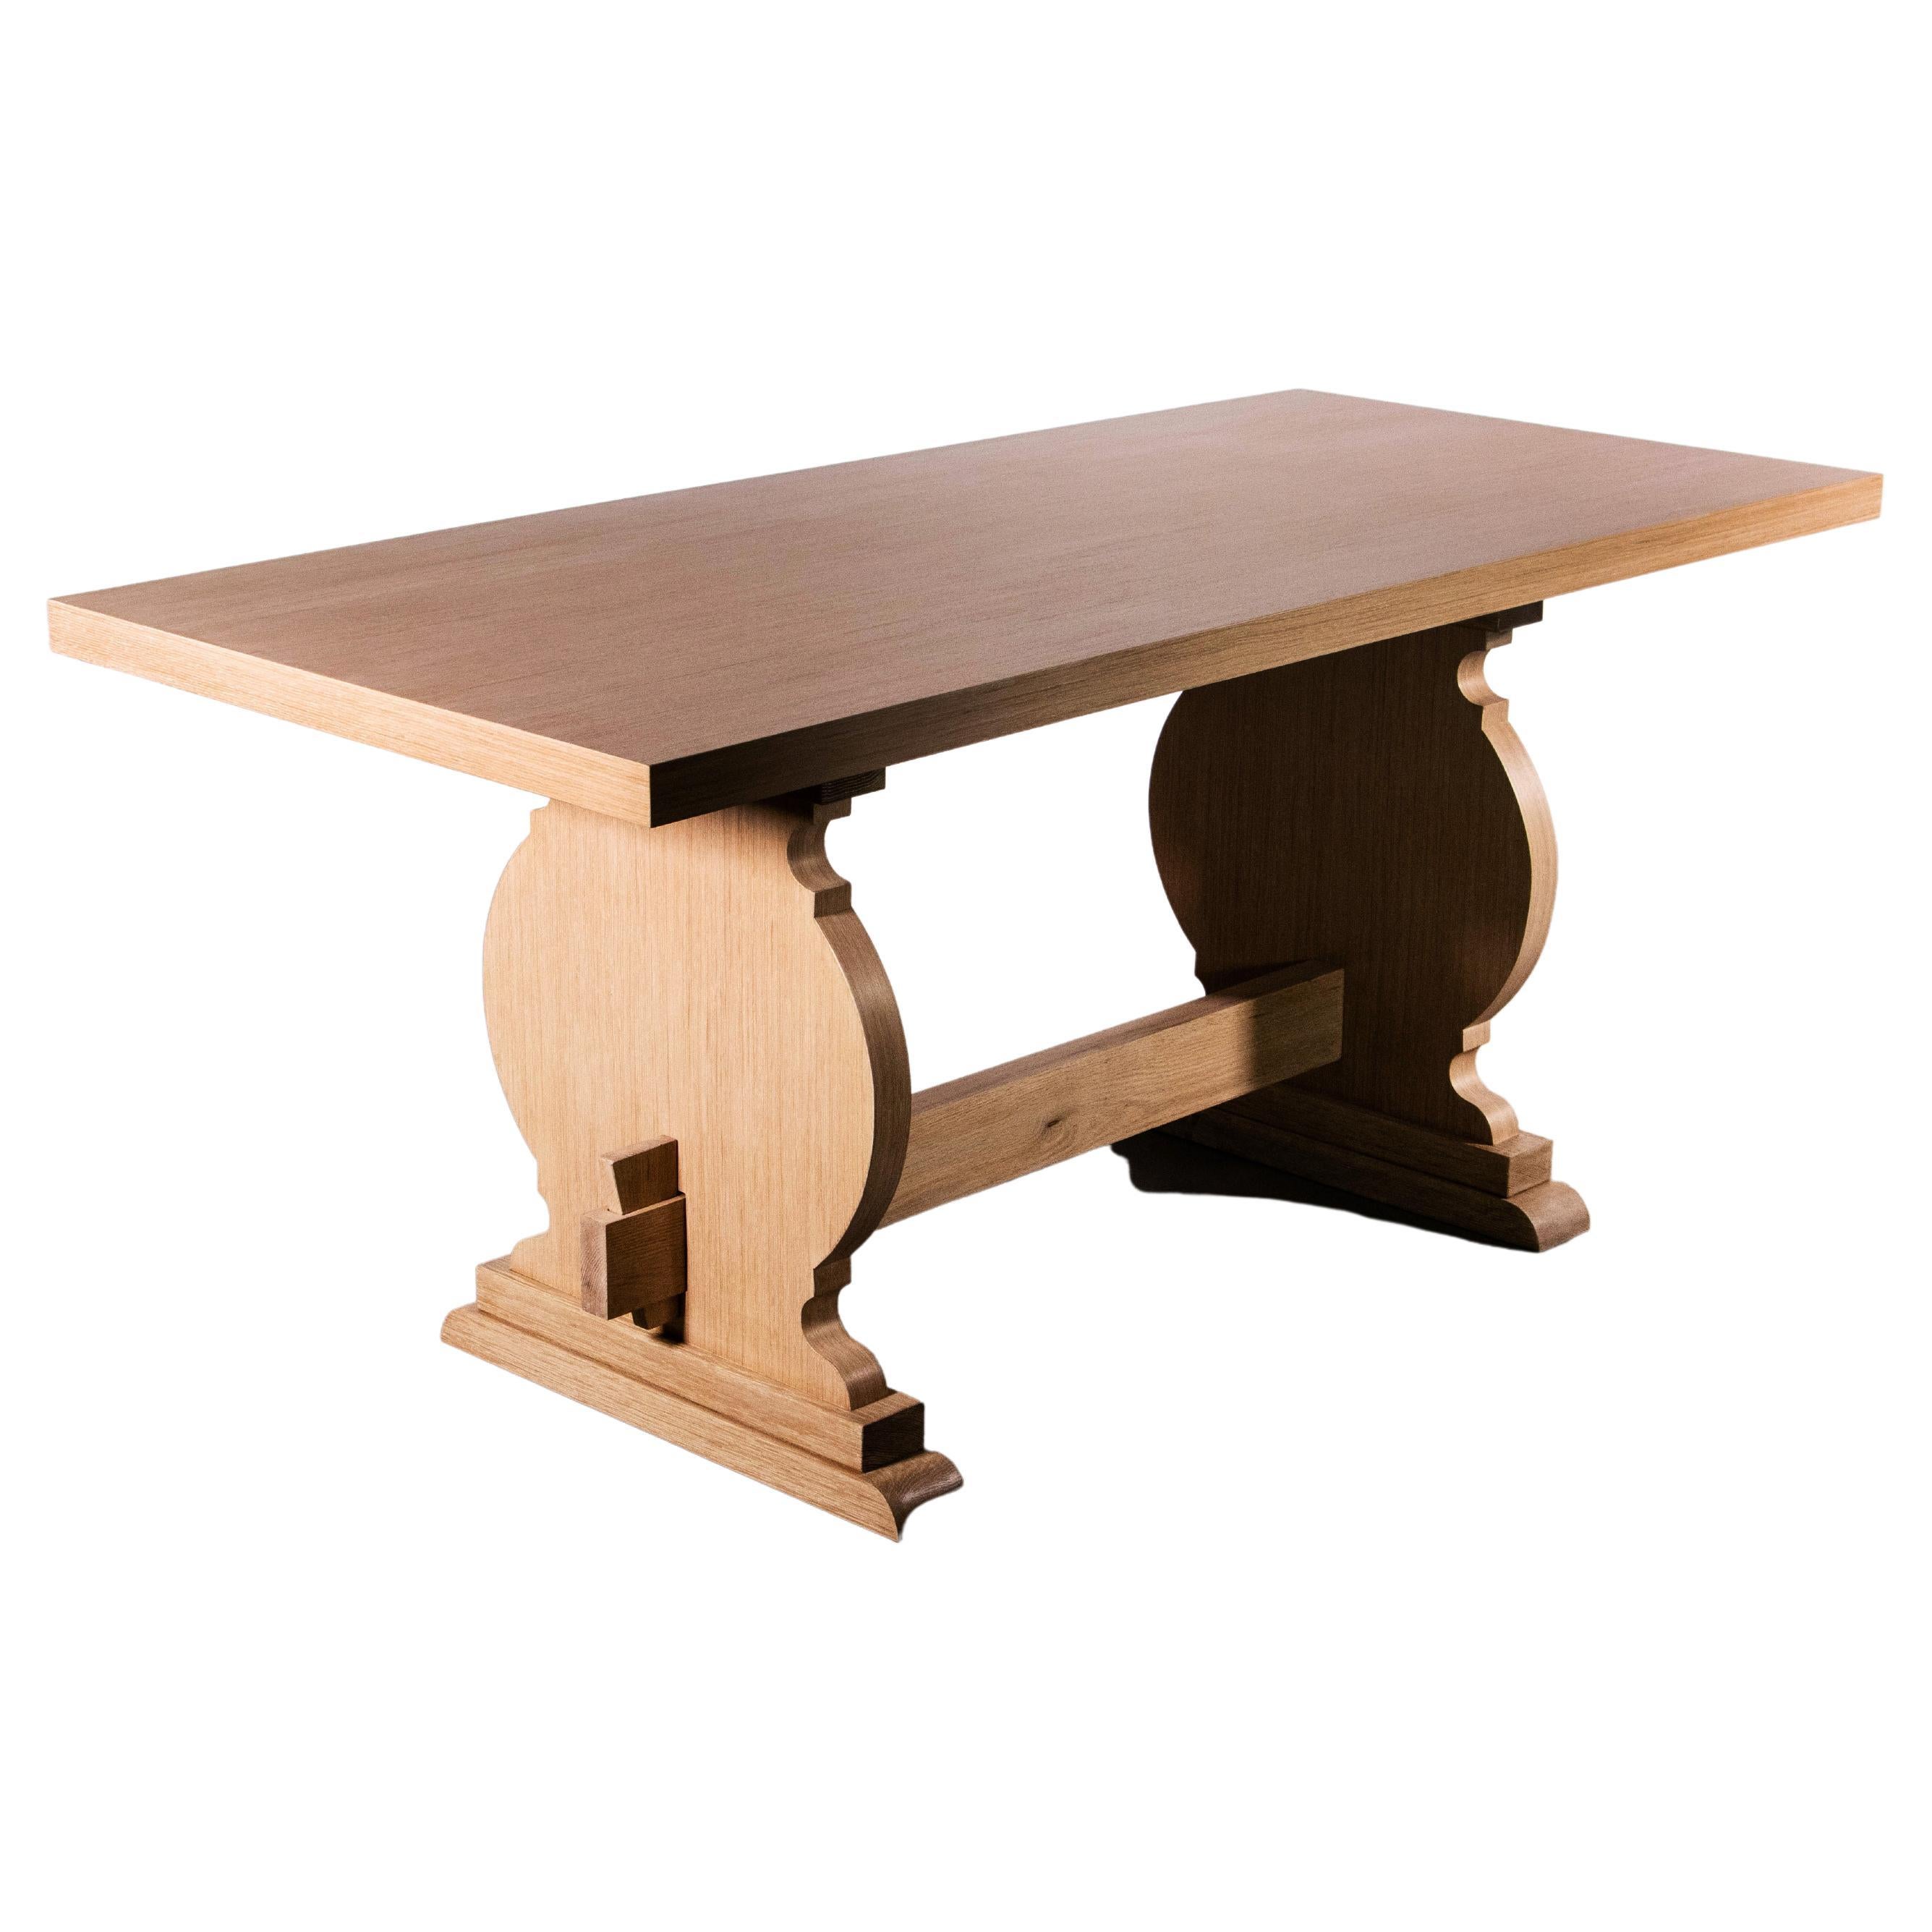 La table Manolo est une version moderne d'un tréteau d'inspiration basque. Montré ici en chêne cérusé mais disponible dans n'importe quel bois ou finition et dans des tailles personnalisées. Les caissons jumeaux peuvent être disposés à différents